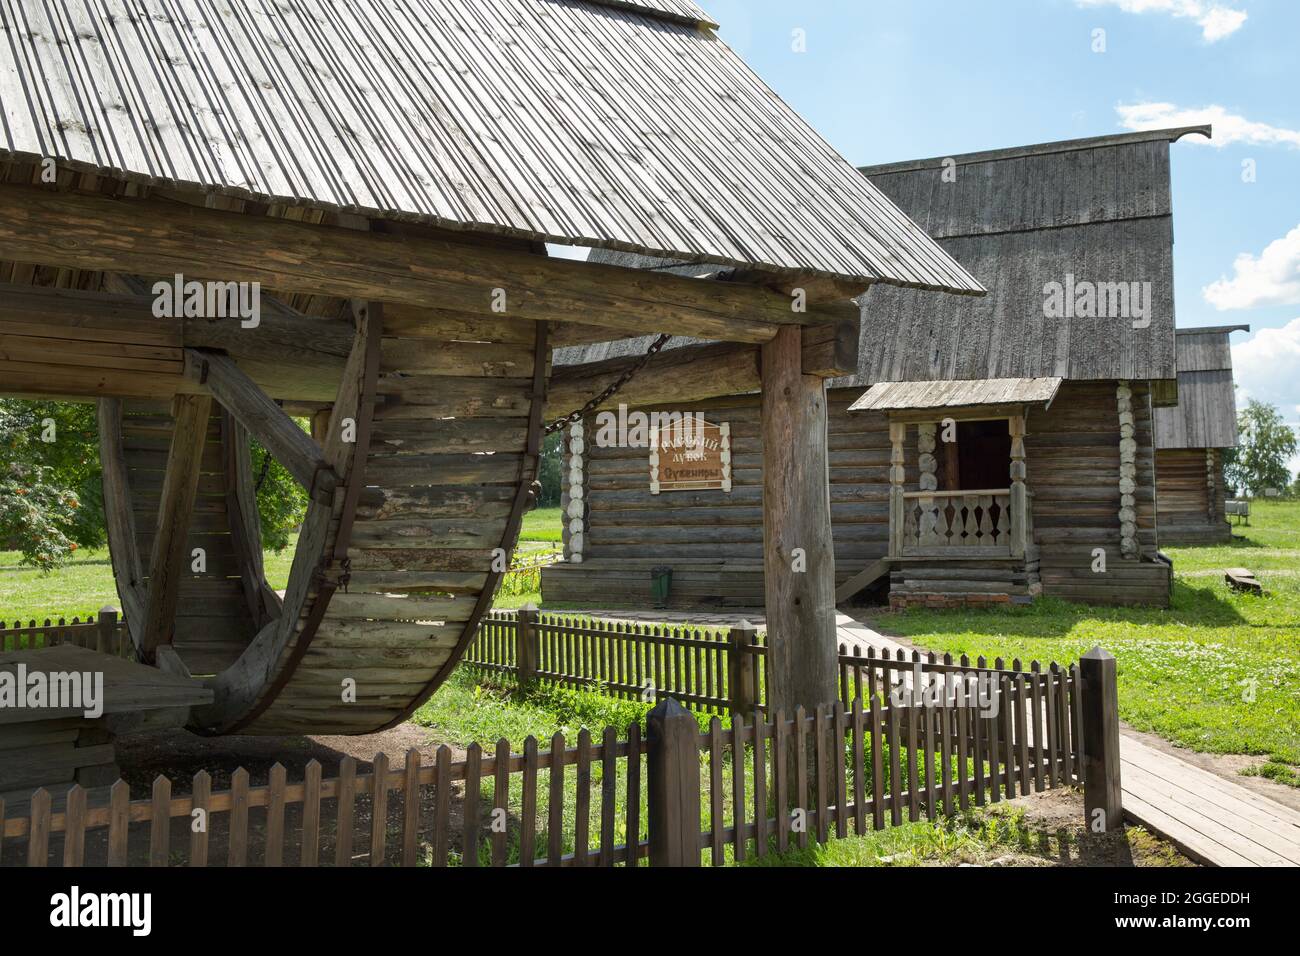 Musée de l'architecture en bois, Suzdal, Vladimir Oblast, Russie Banque D'Images